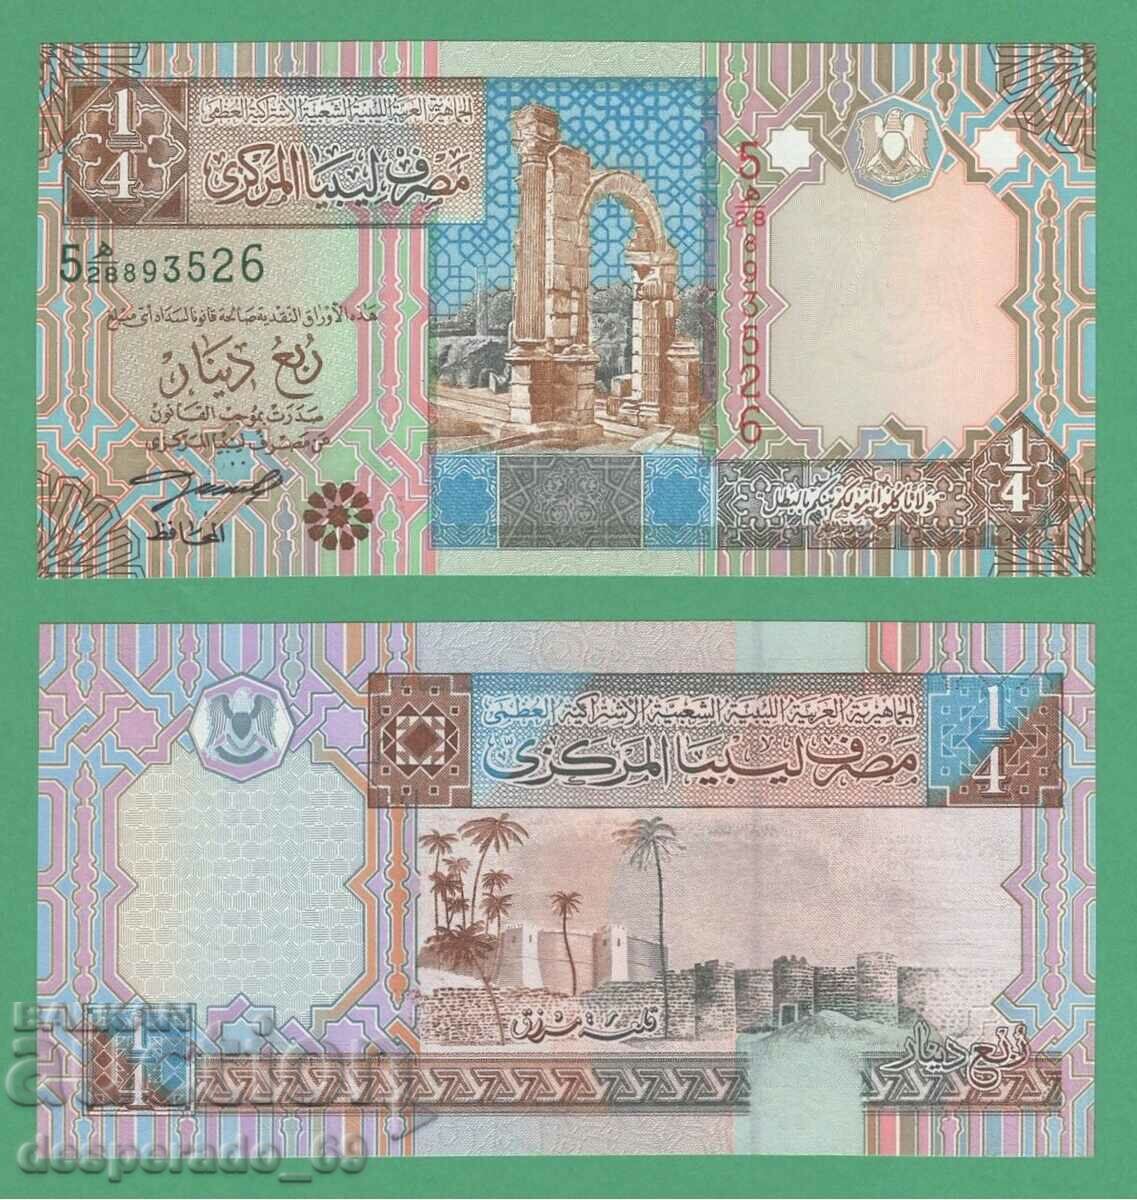 (¯ "• •. Λιβύη 1/4 Dinar 2002 UNC • • • • •)